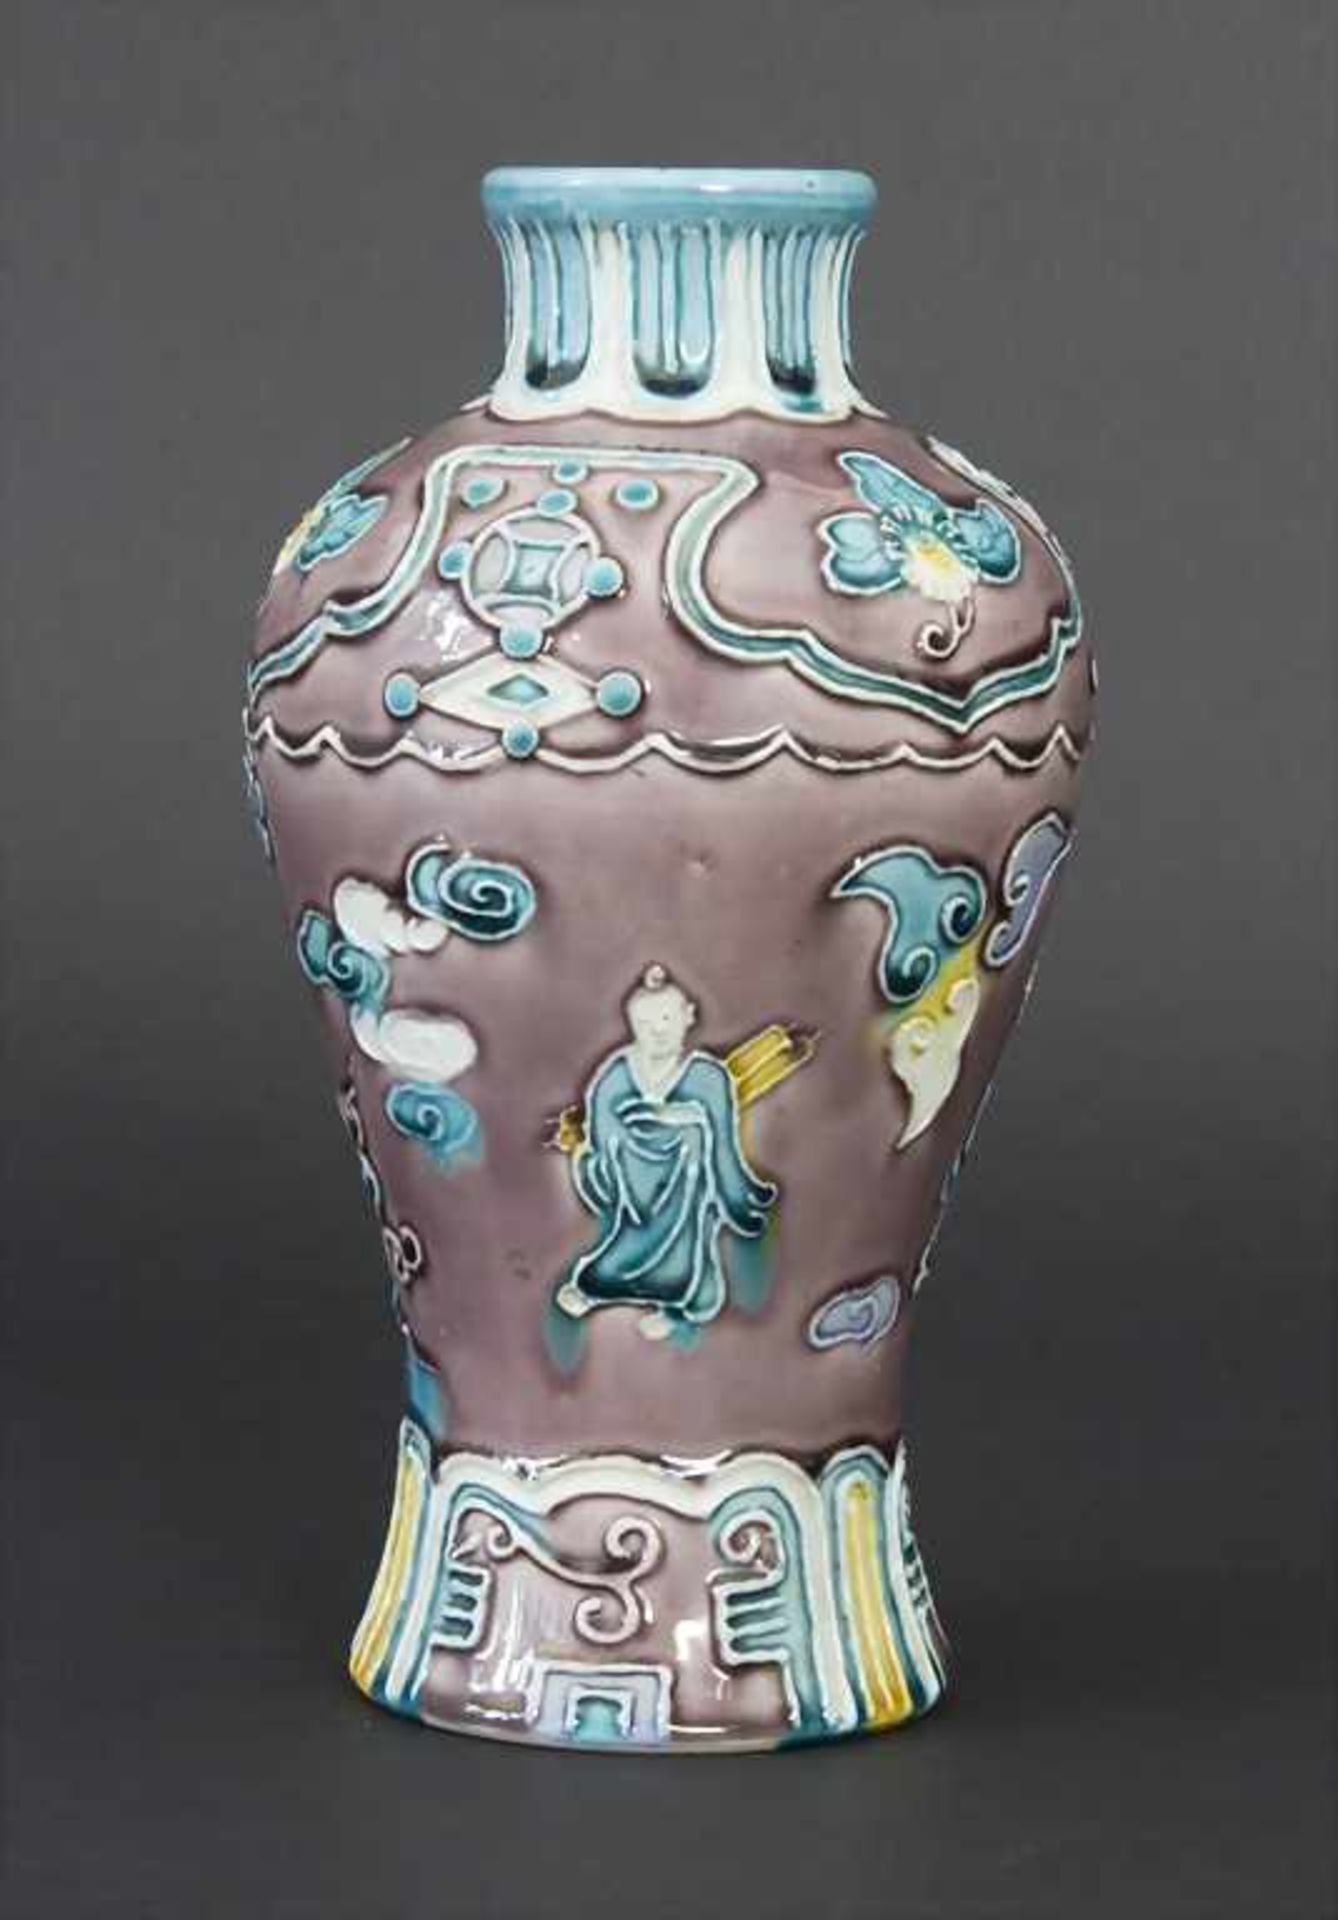 Fahua-Vase, China, wohl 18./19. Jh.Material: Bisquitporzellan, Auflagen in Fahuatechnik, polychrom - Bild 2 aus 7